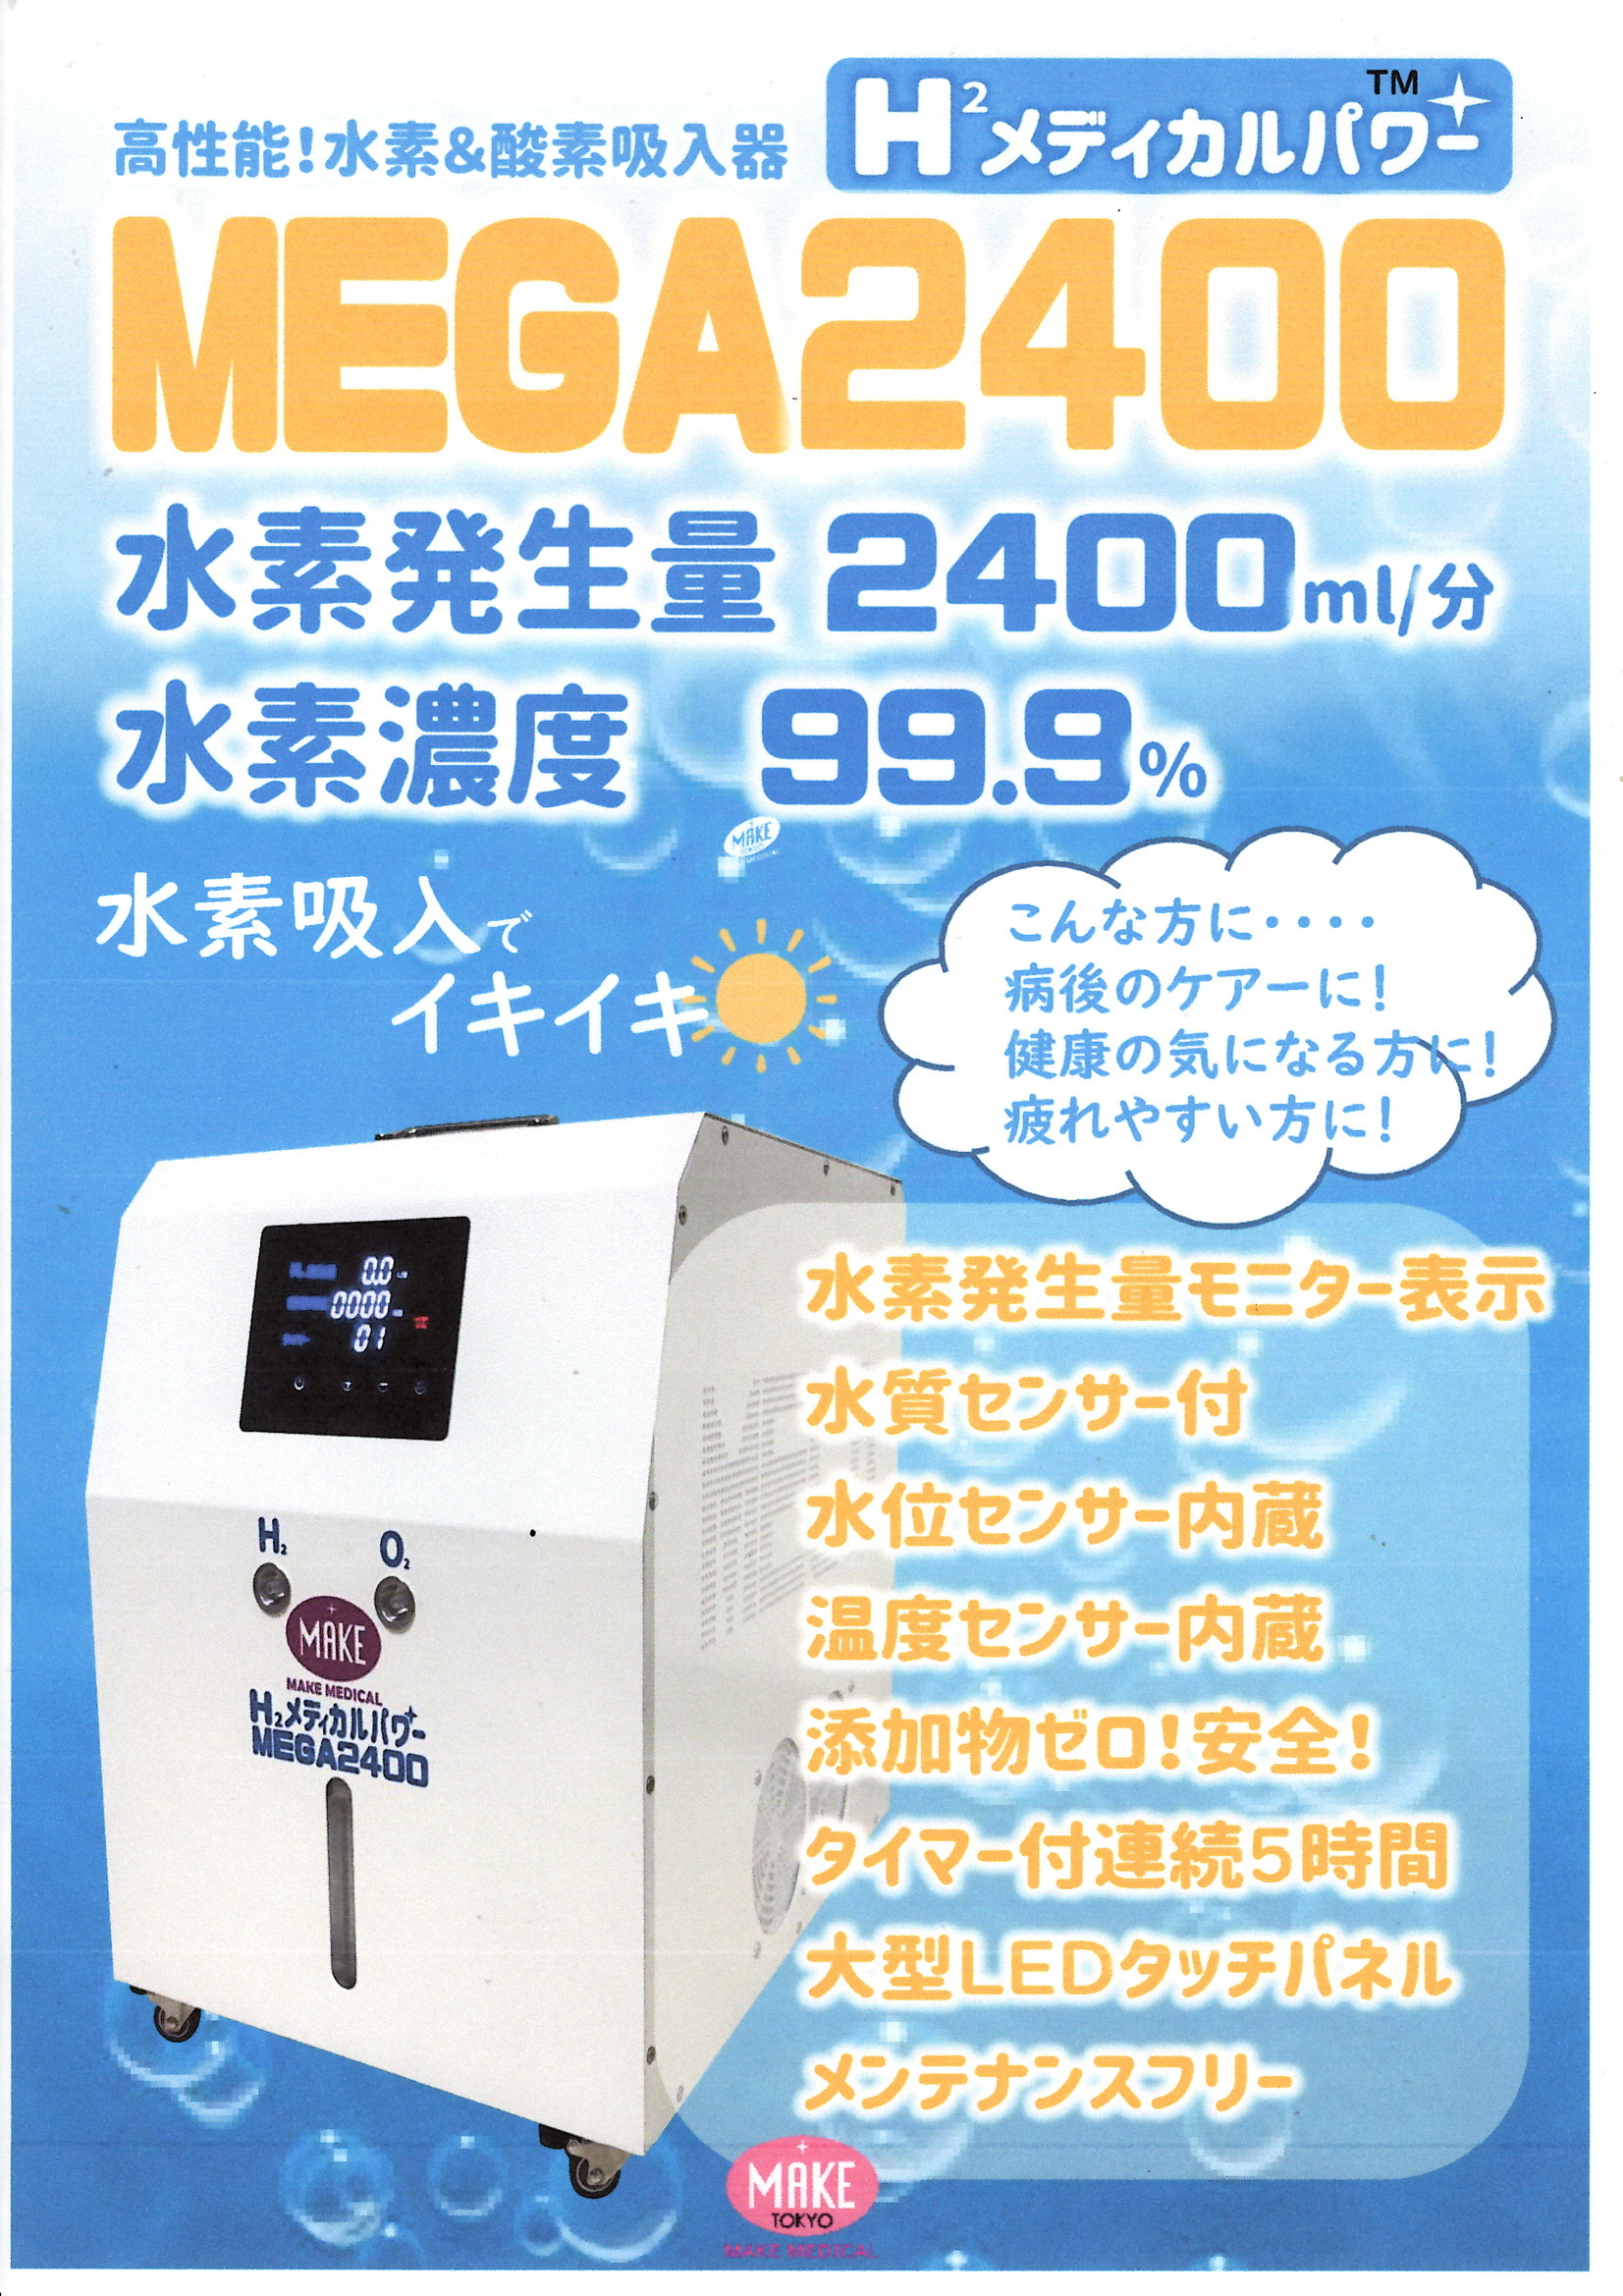 神戸市の医療法人社団 岡田クリニック眼科・緑内障・糖尿病、
2022年8月に日本最大級の水素吸入器を導入